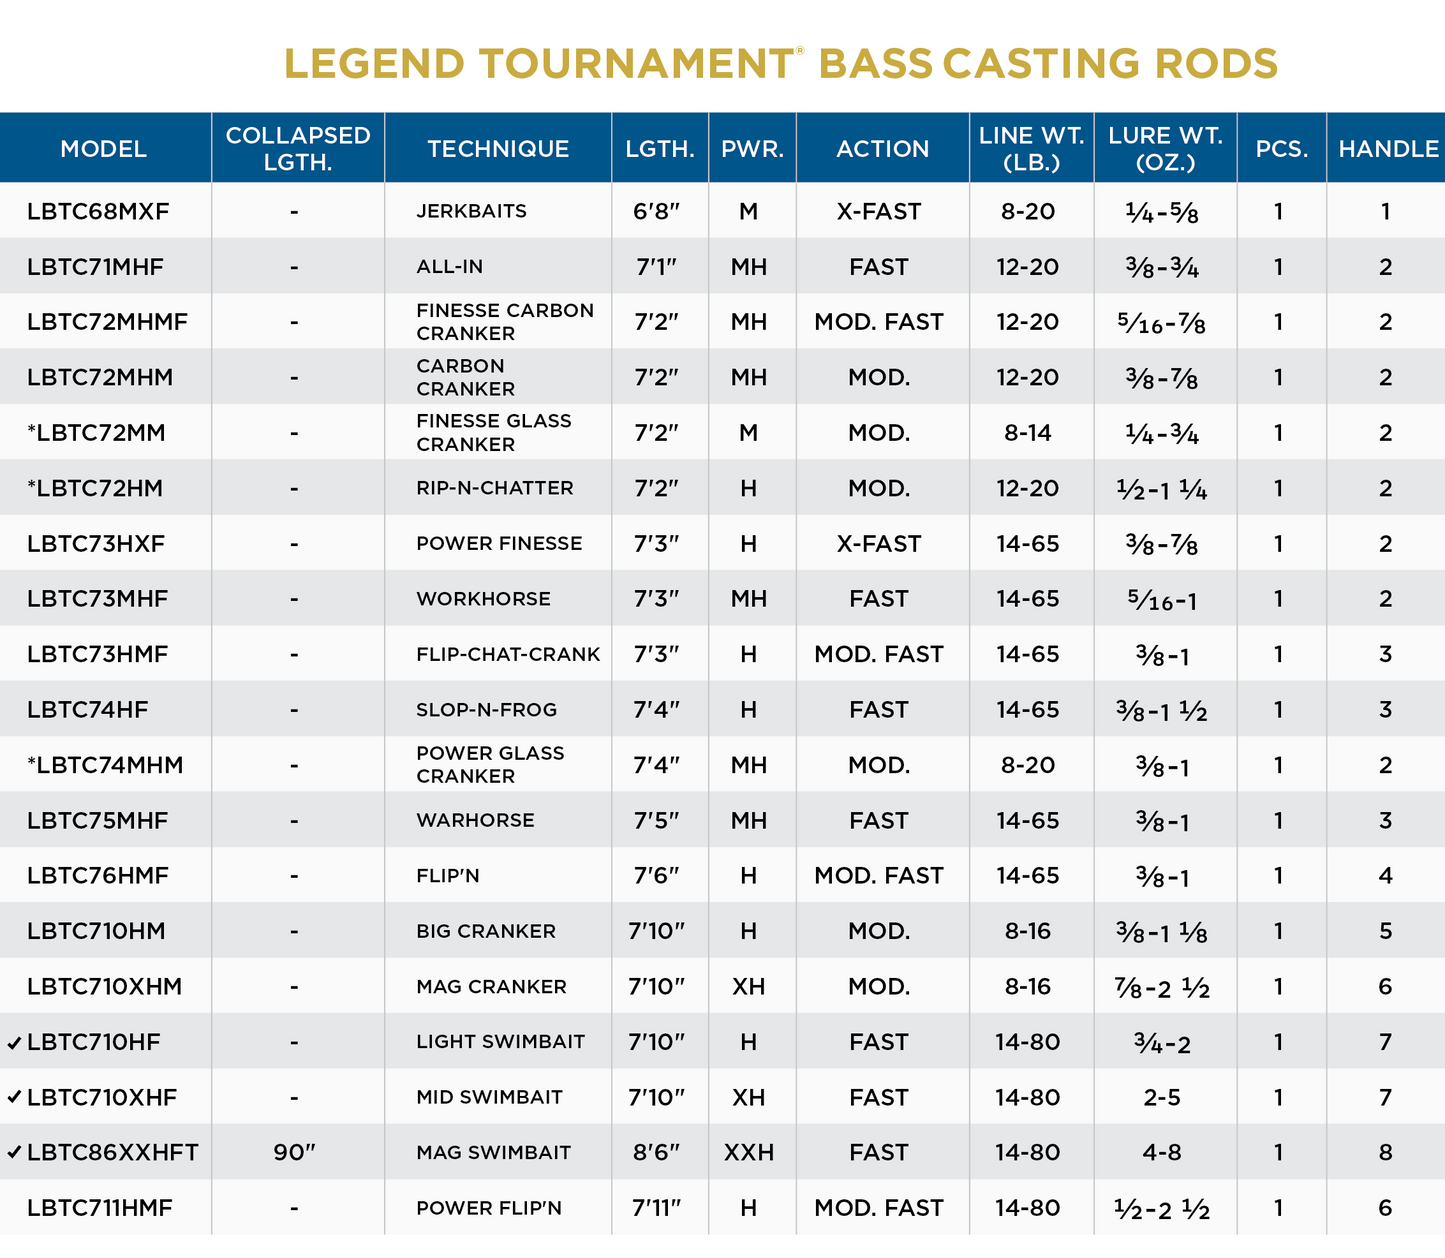 St. Croix Legend Tournament Bass Casting Rods